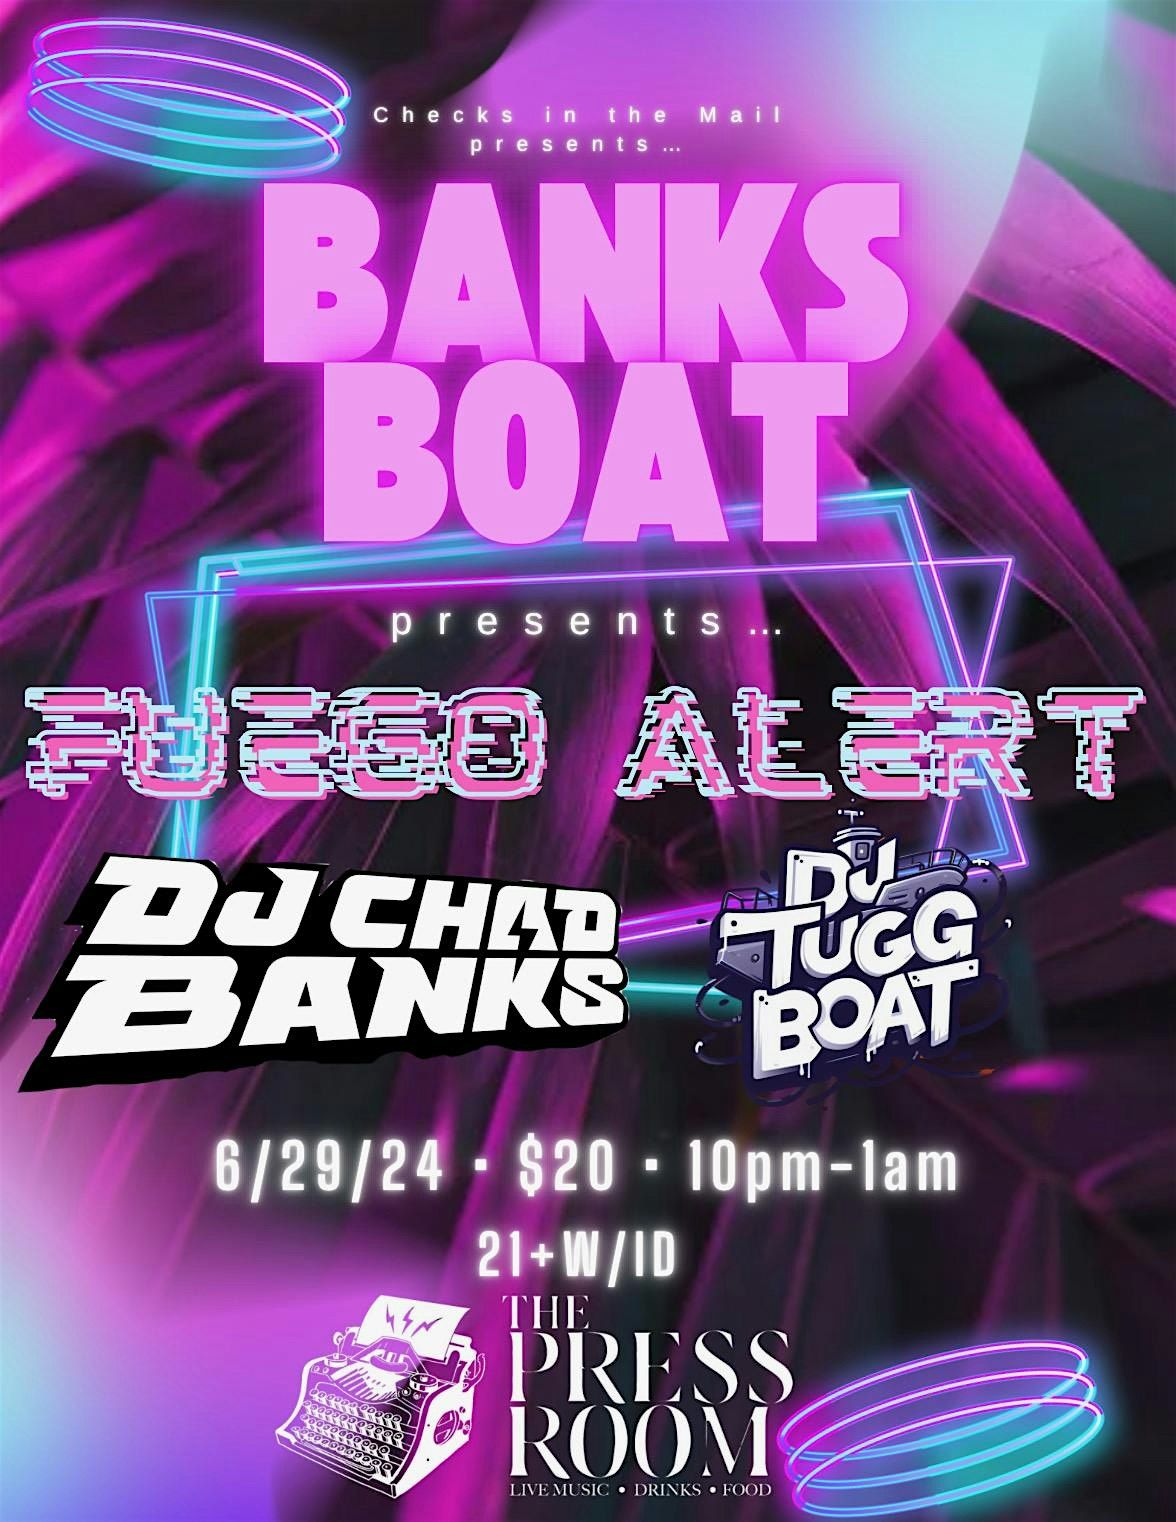 DJ Chad Banks x DJ Tuggboat